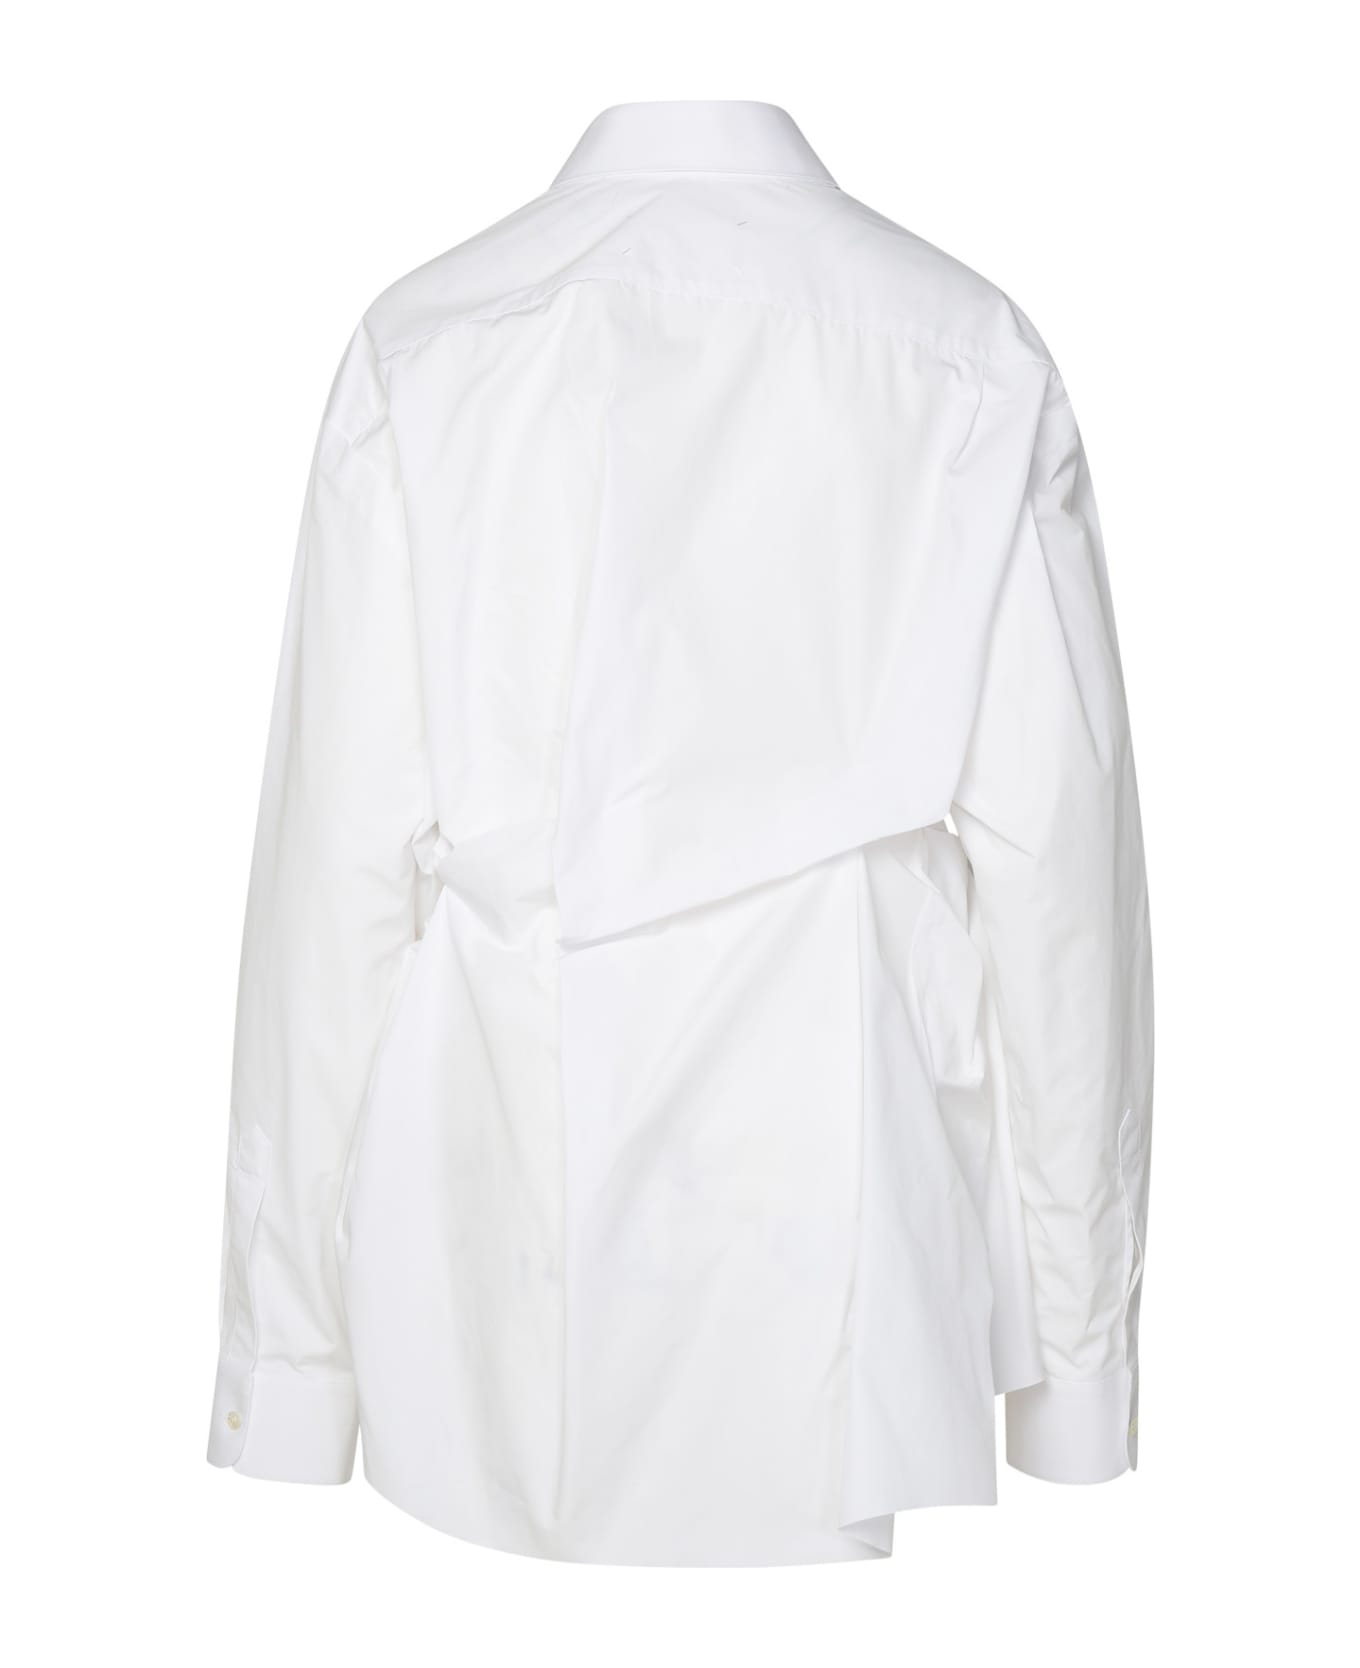 Maison Margiela White Cotton Shirt - white ブラウス